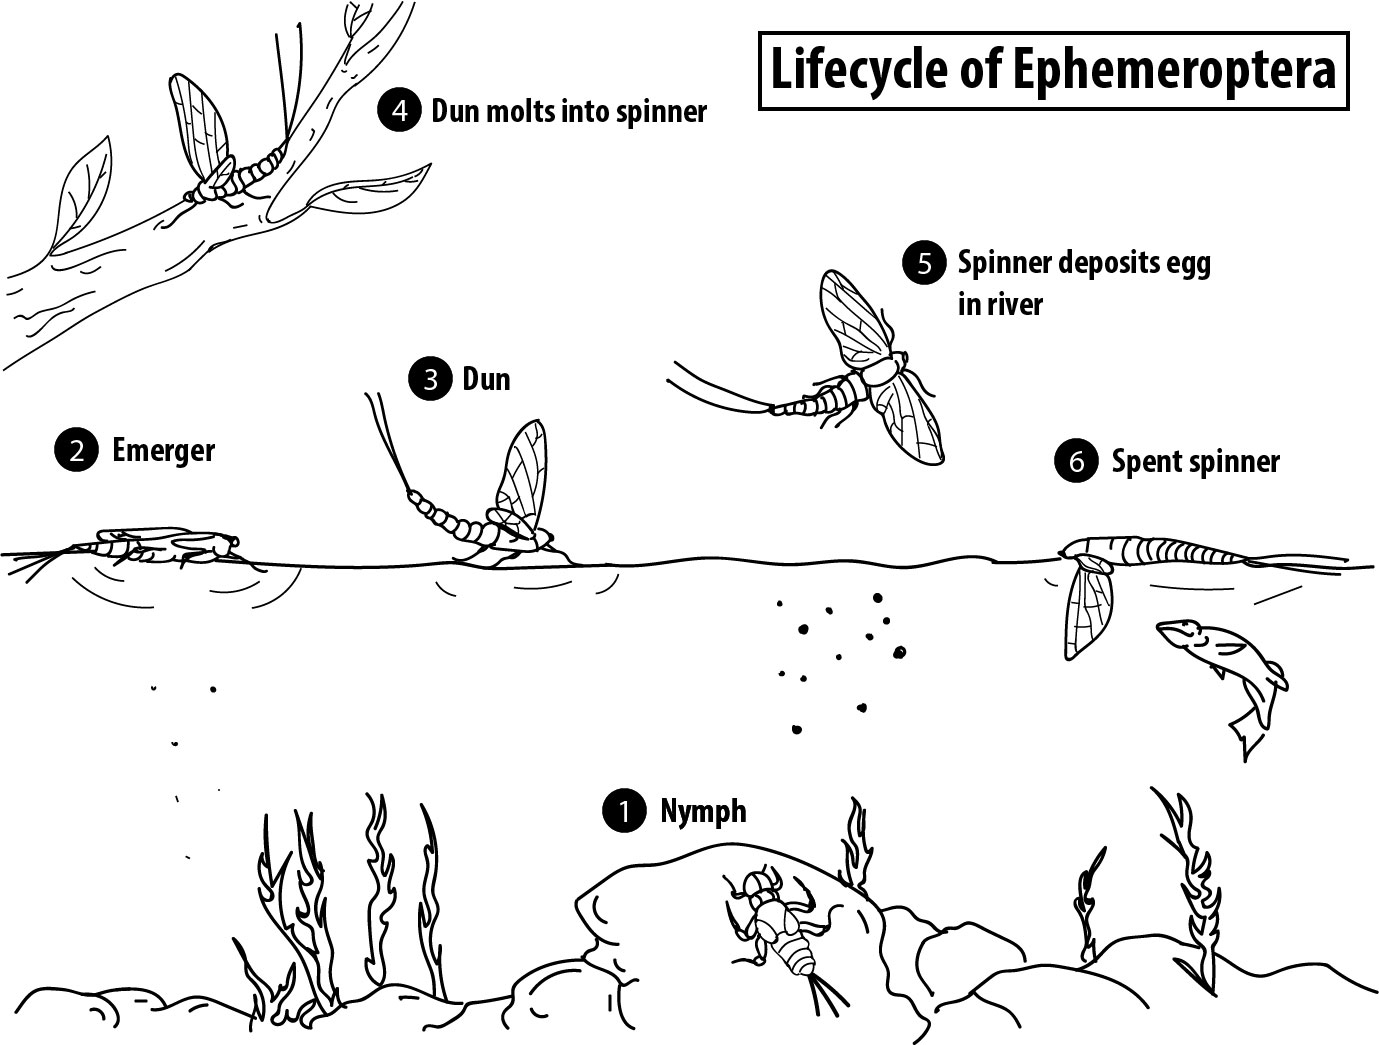 Lifecycle-of-ephemeroptera.jpg